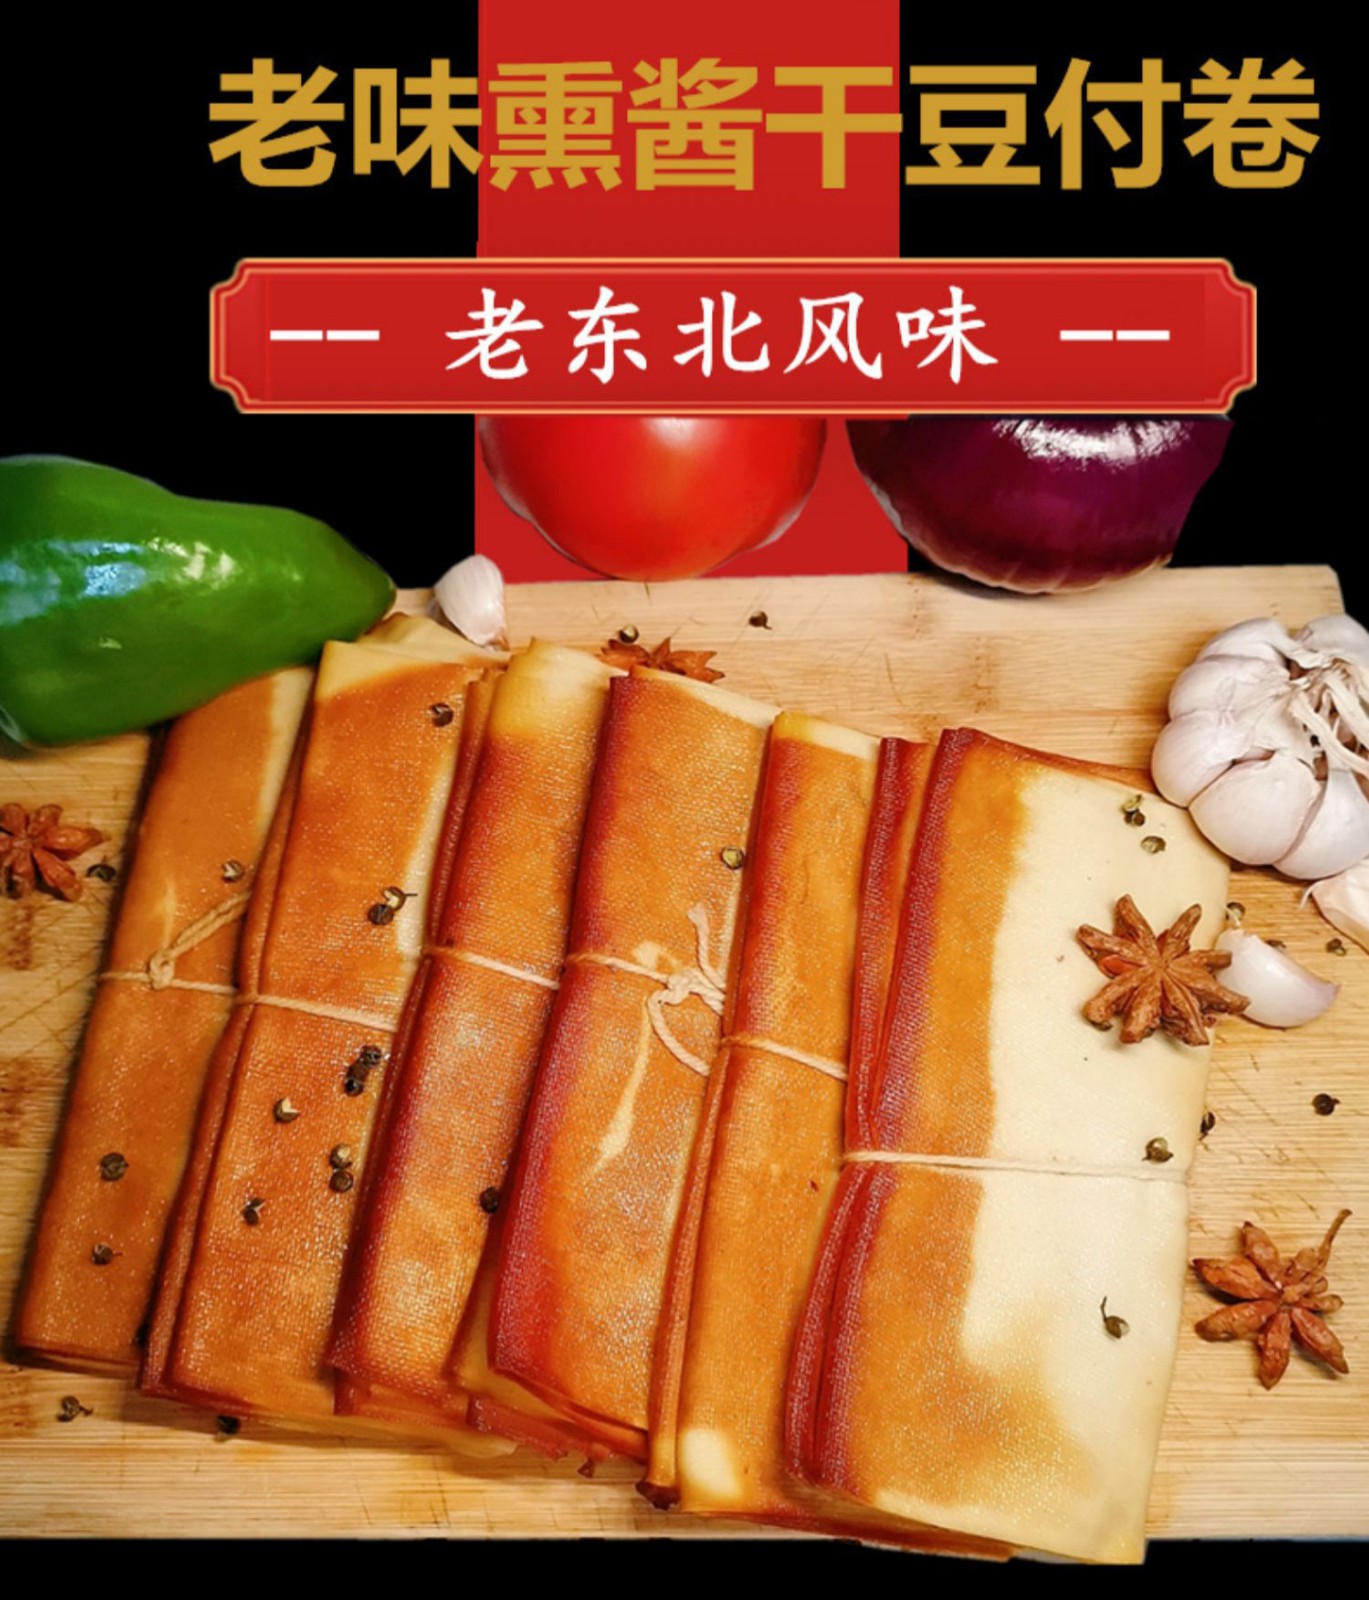 东北五香熏干豆腐卷熏制烟熏酱鸡汤干豆腐丝千张素食豆制品熟食卷1斤